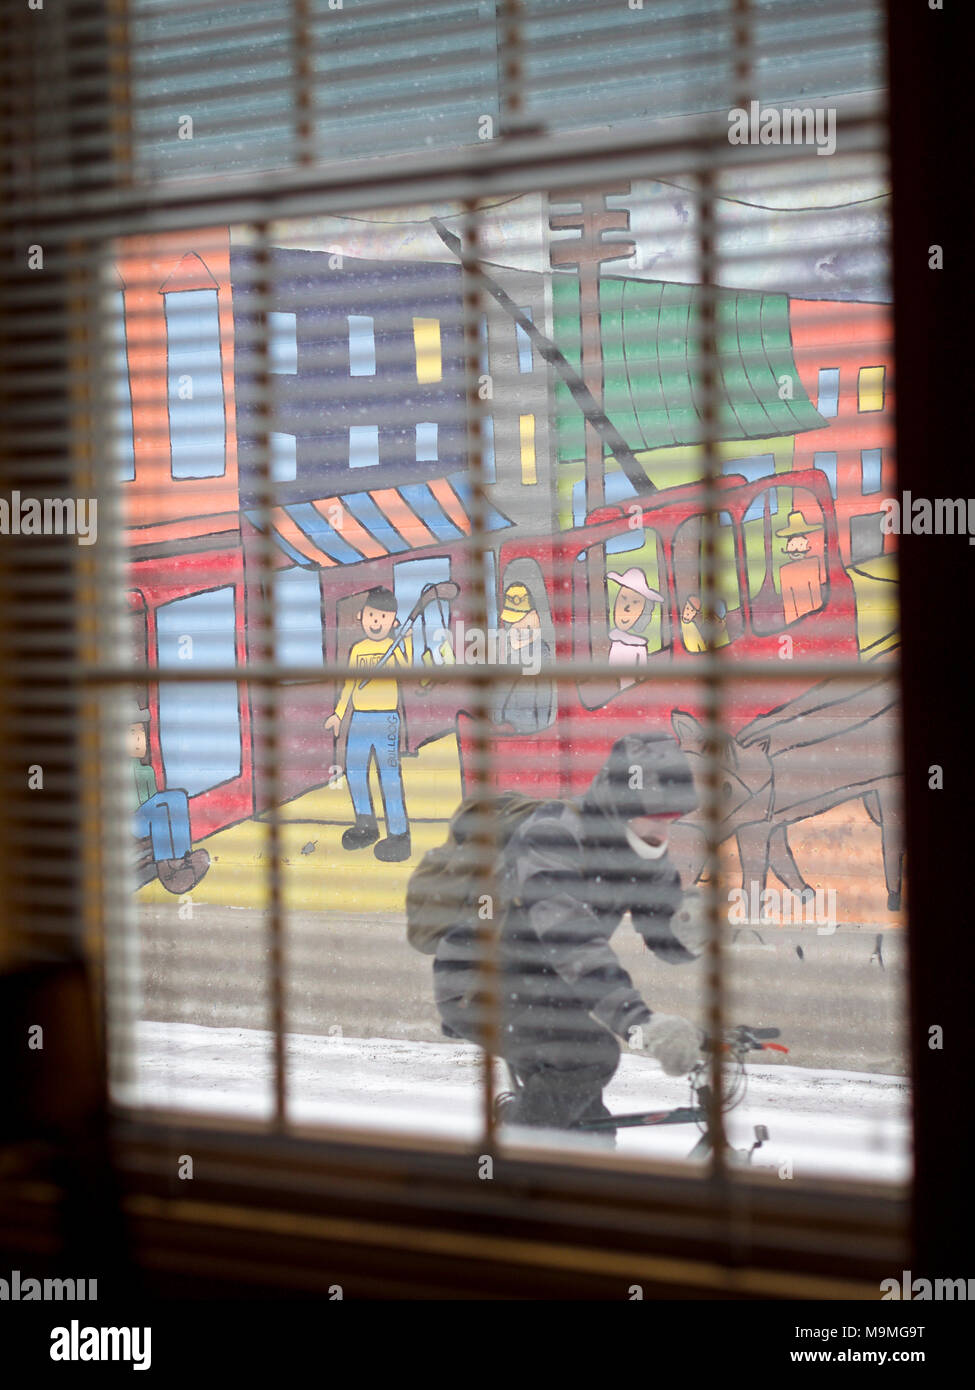 Un cycliste rides par une peinture murale lumineuse comme vu à travers une fenêtre : Une peinture murale de style naïf décore un mur sur une petite rue de la ville de Québec. Un cycliste rides par vus à travers une fenêtre aveugle, peinait sur un jour froid neigeux. Banque D'Images